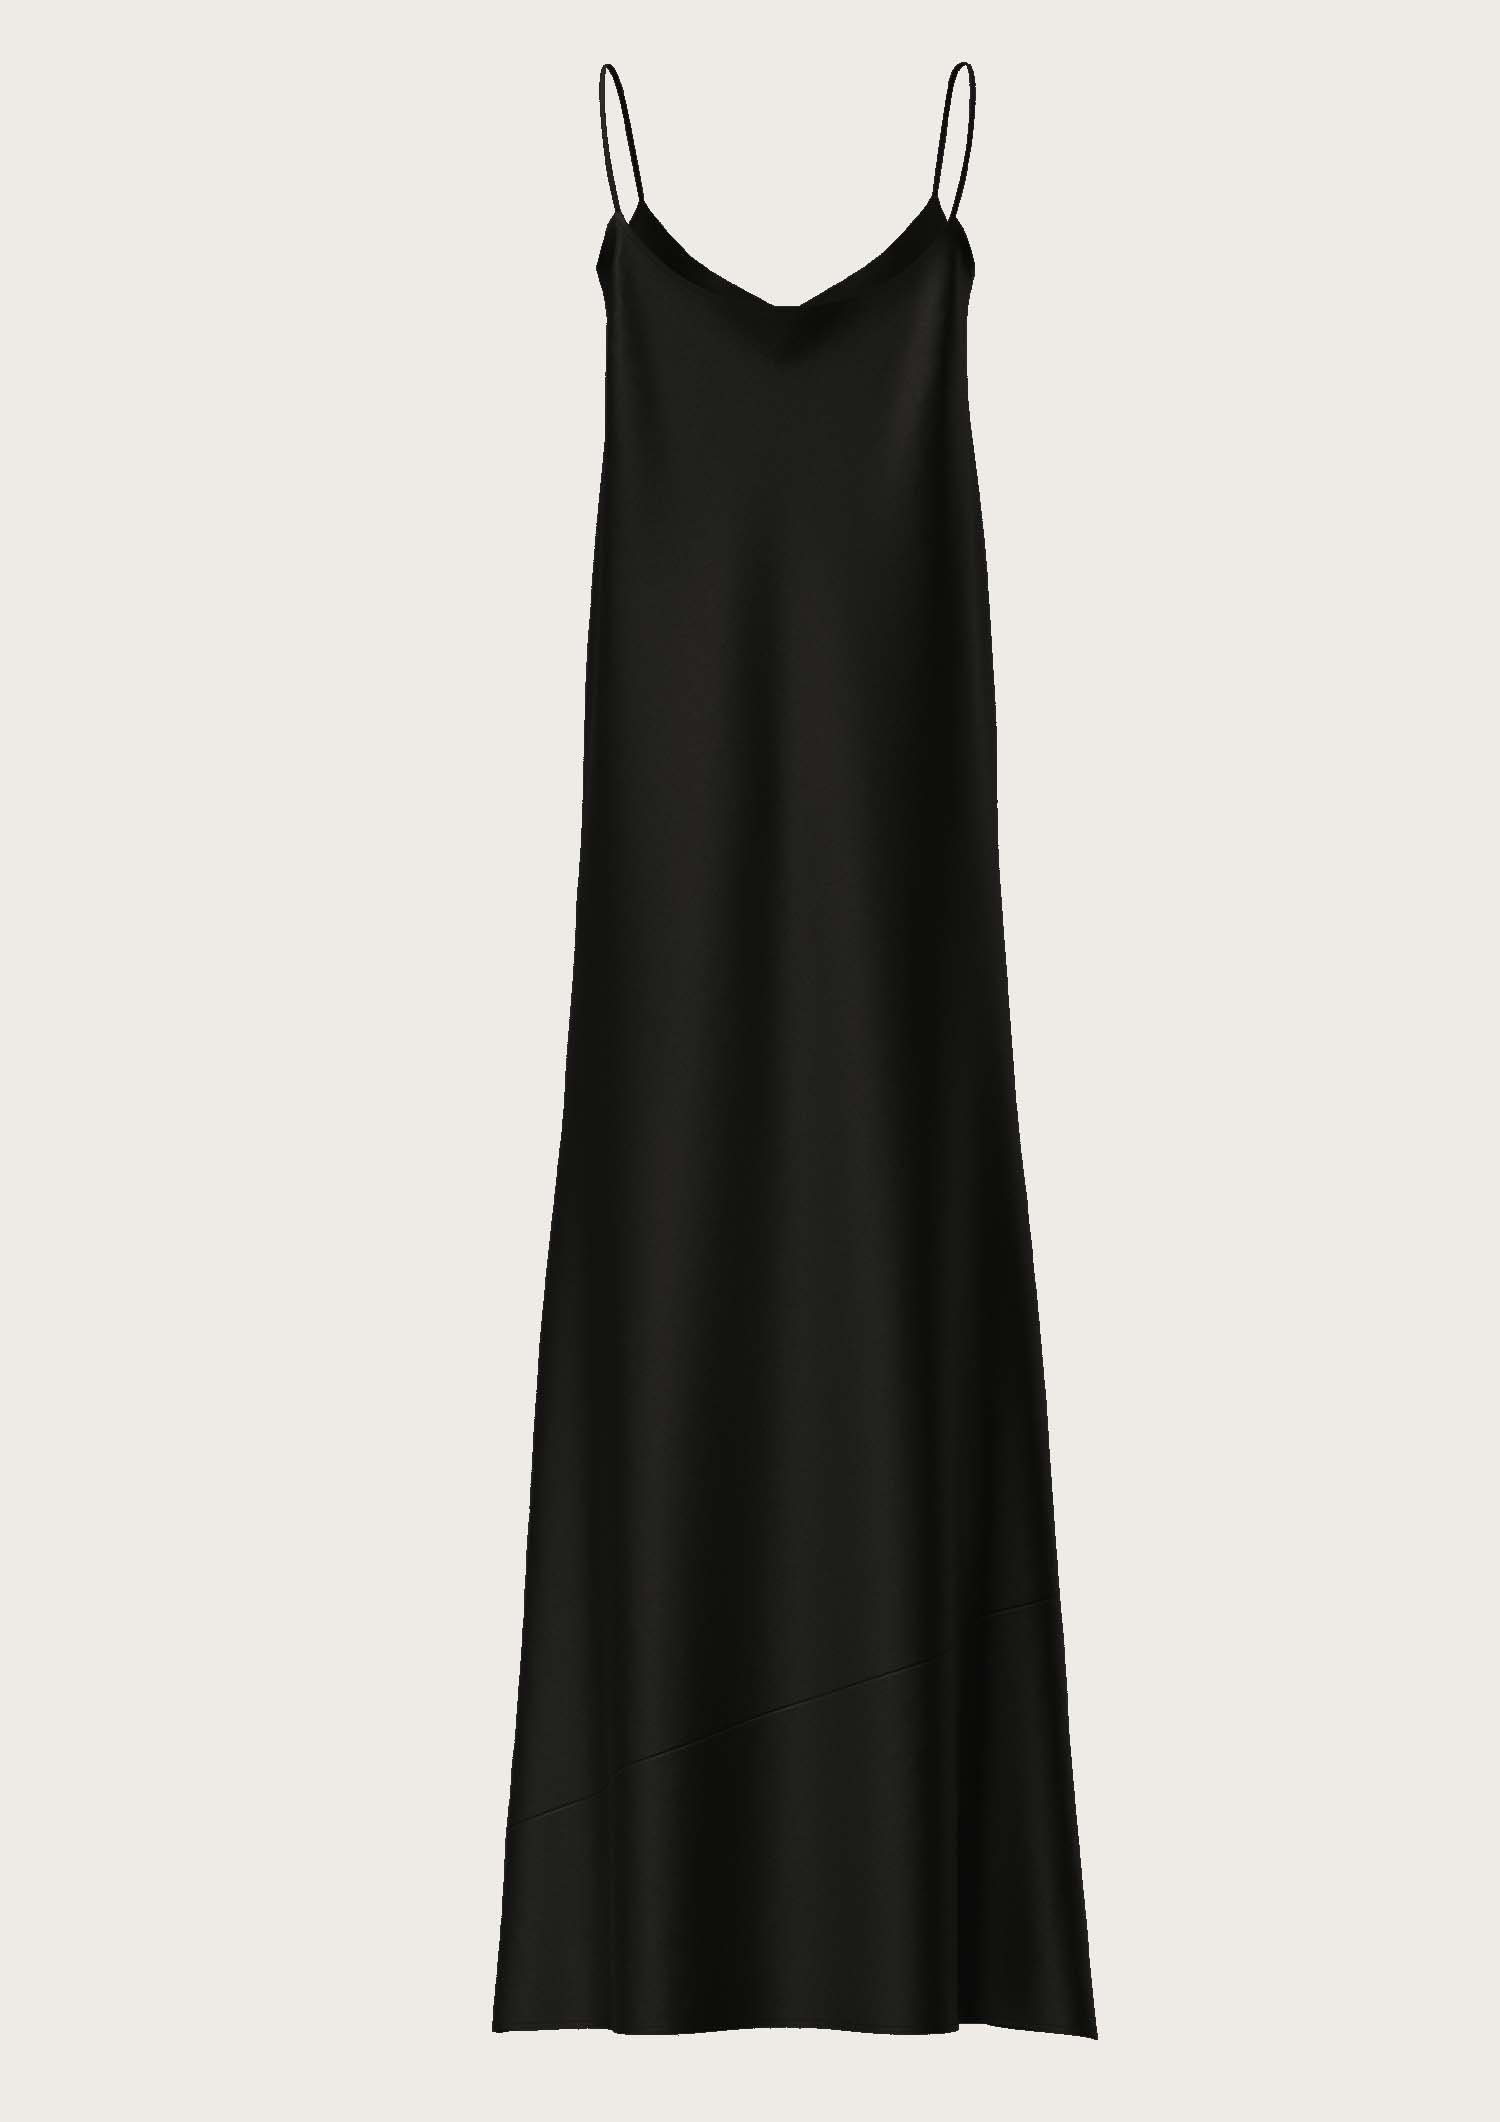 Silk Long Slip Dress Antoine in Black (Kopie) (Kopie) (Kopie)